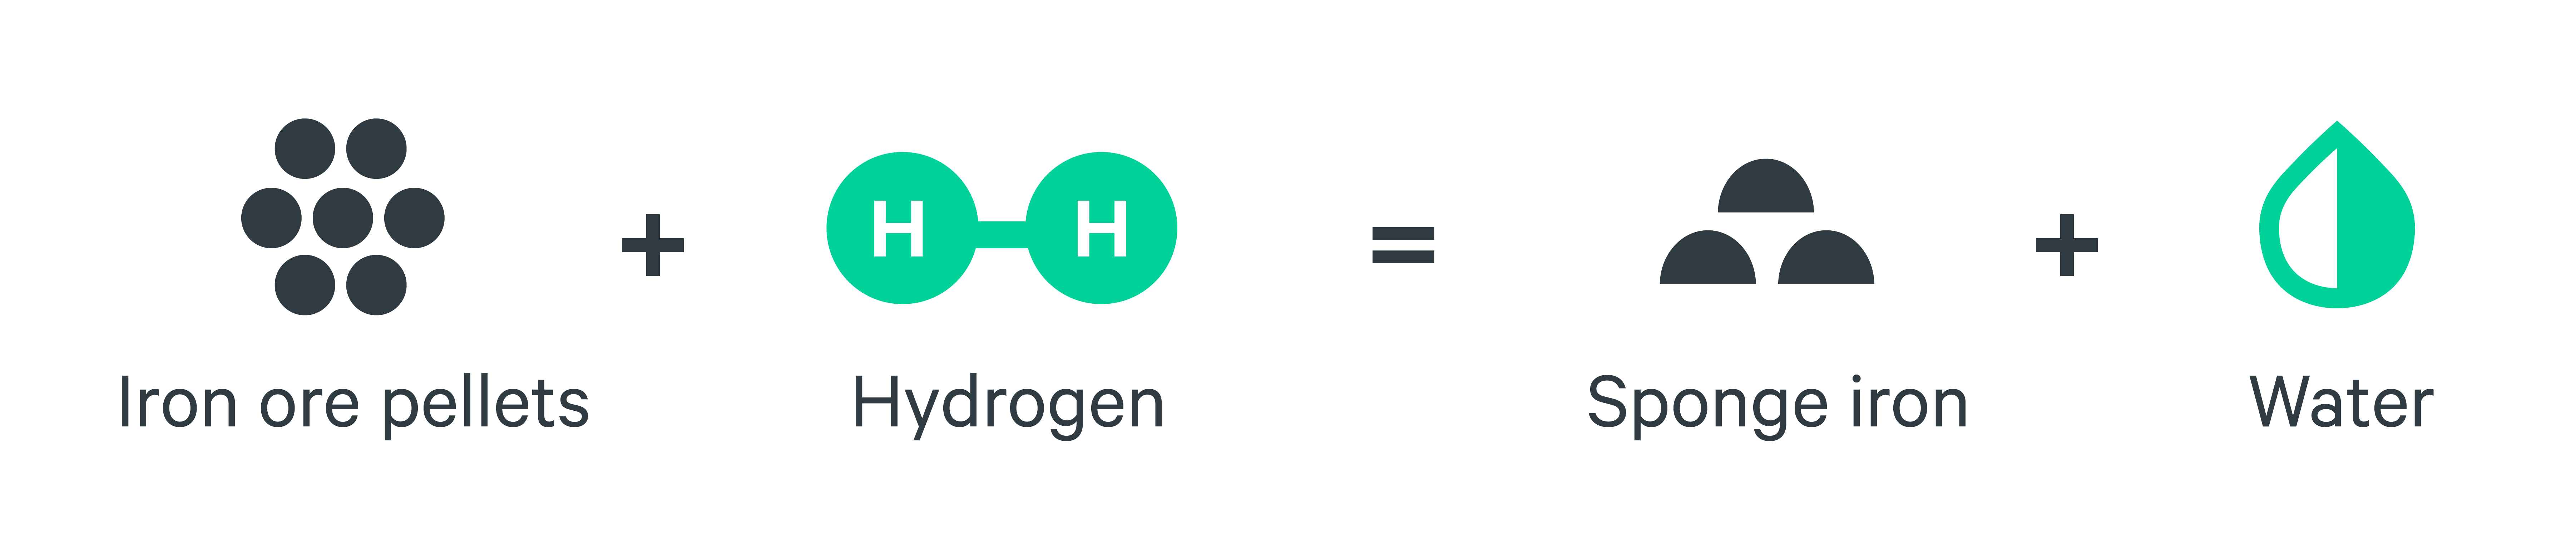 Iron ore pellets + hydrogen = sponge iron + water